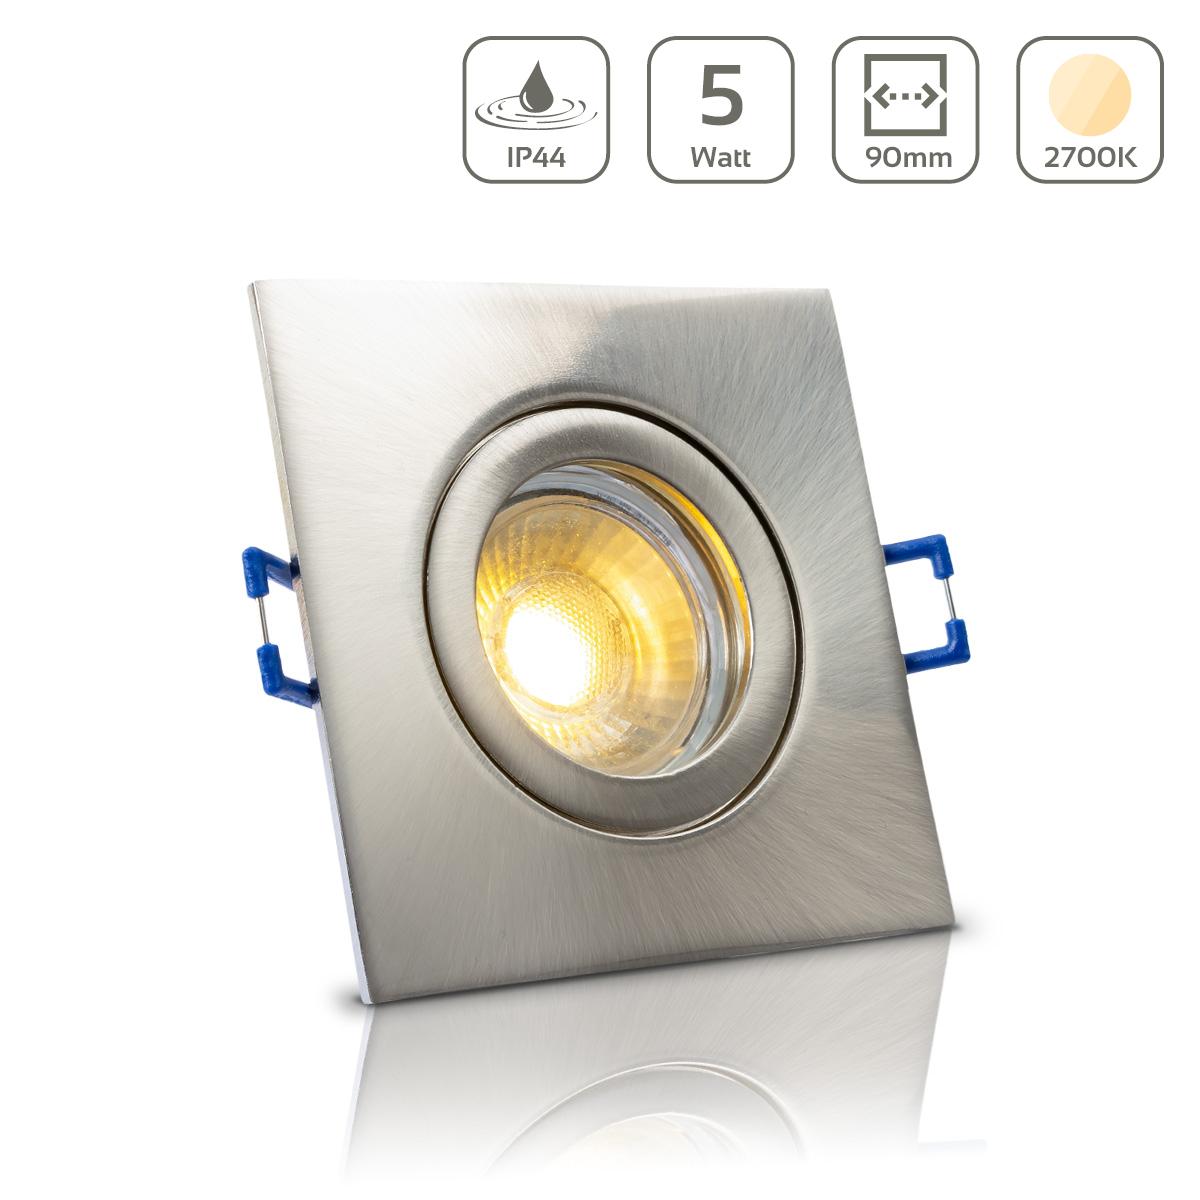 Einbauspot IP44 eckig - Farbe:  Edelstahl-gebürstet - LED Leuchtmittel:  GU10 5W warmweiß